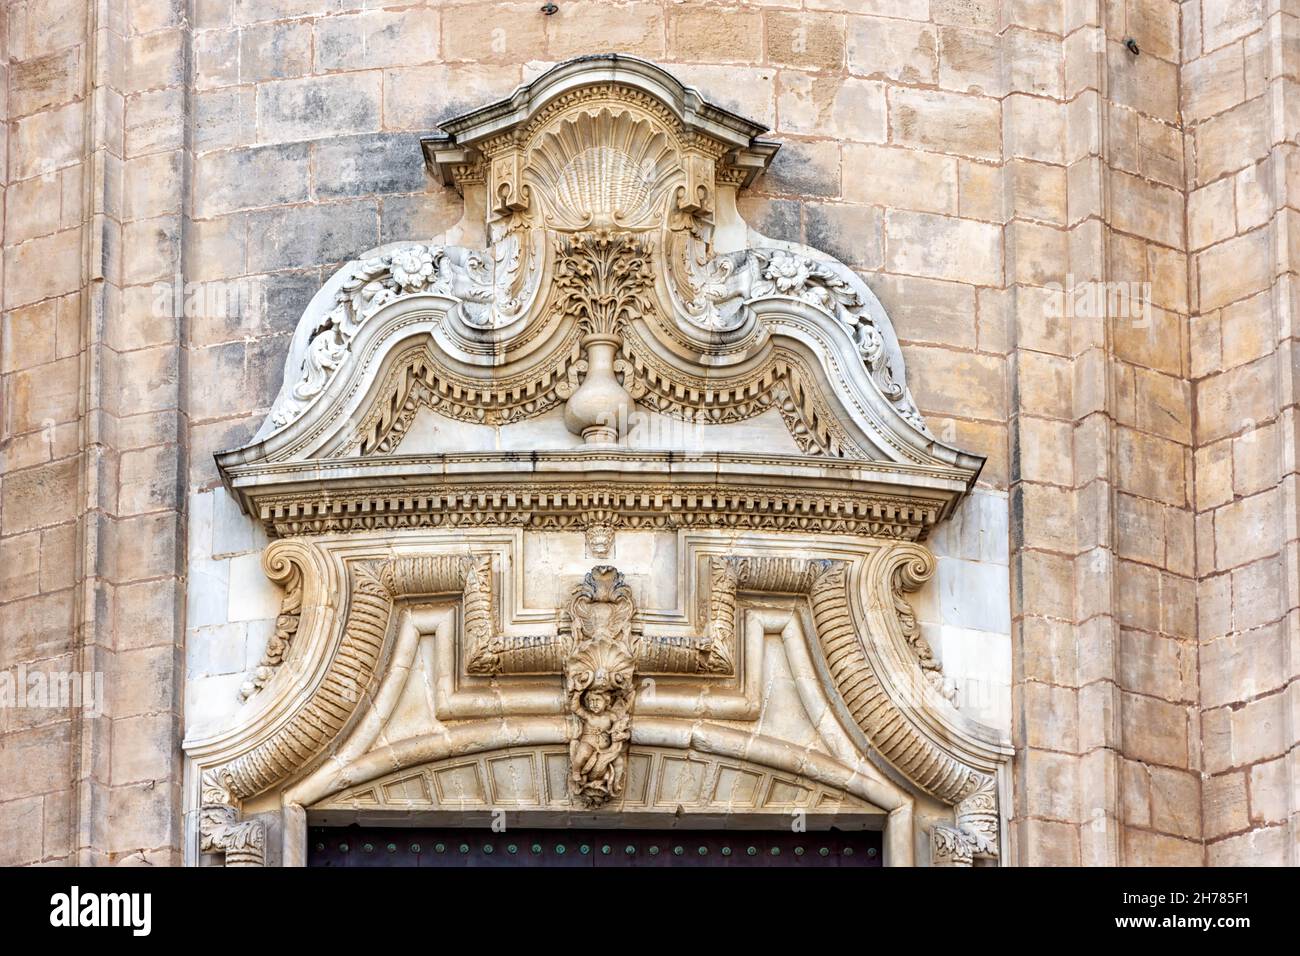 Catedral de la Santa Cruz sobre el mar y sus detalles en Cádiz, España Stock Photo